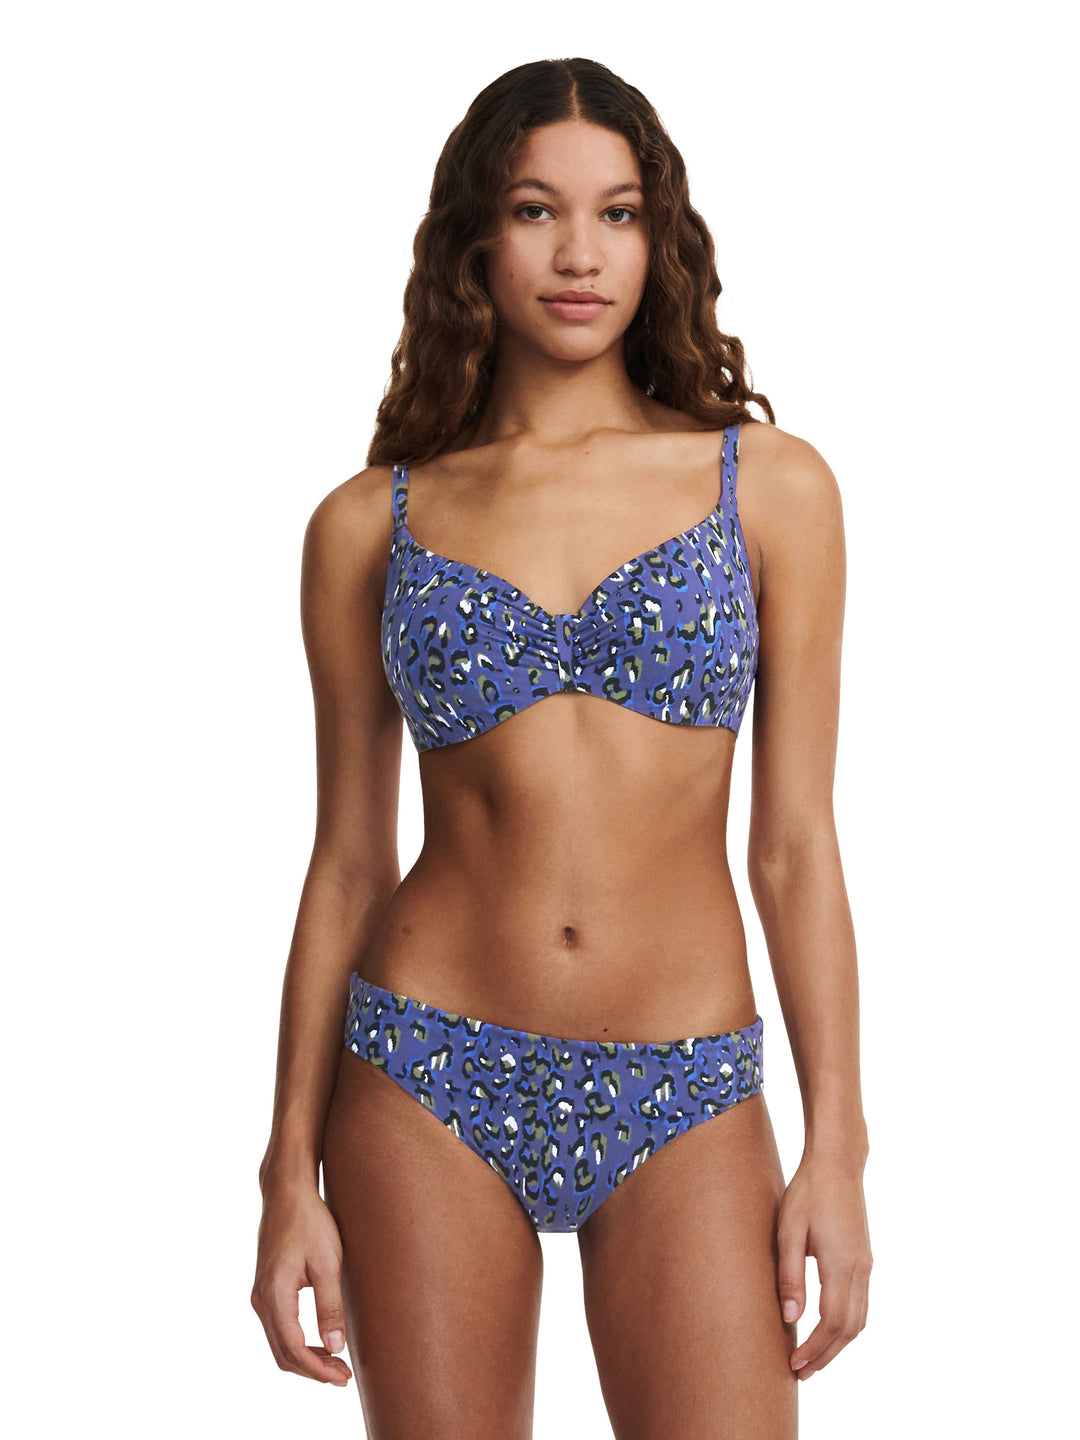 Chantelle Swimwear Eos Covering Underwired Bra - Blue Leopard Full Cup Bikini Chantelle 